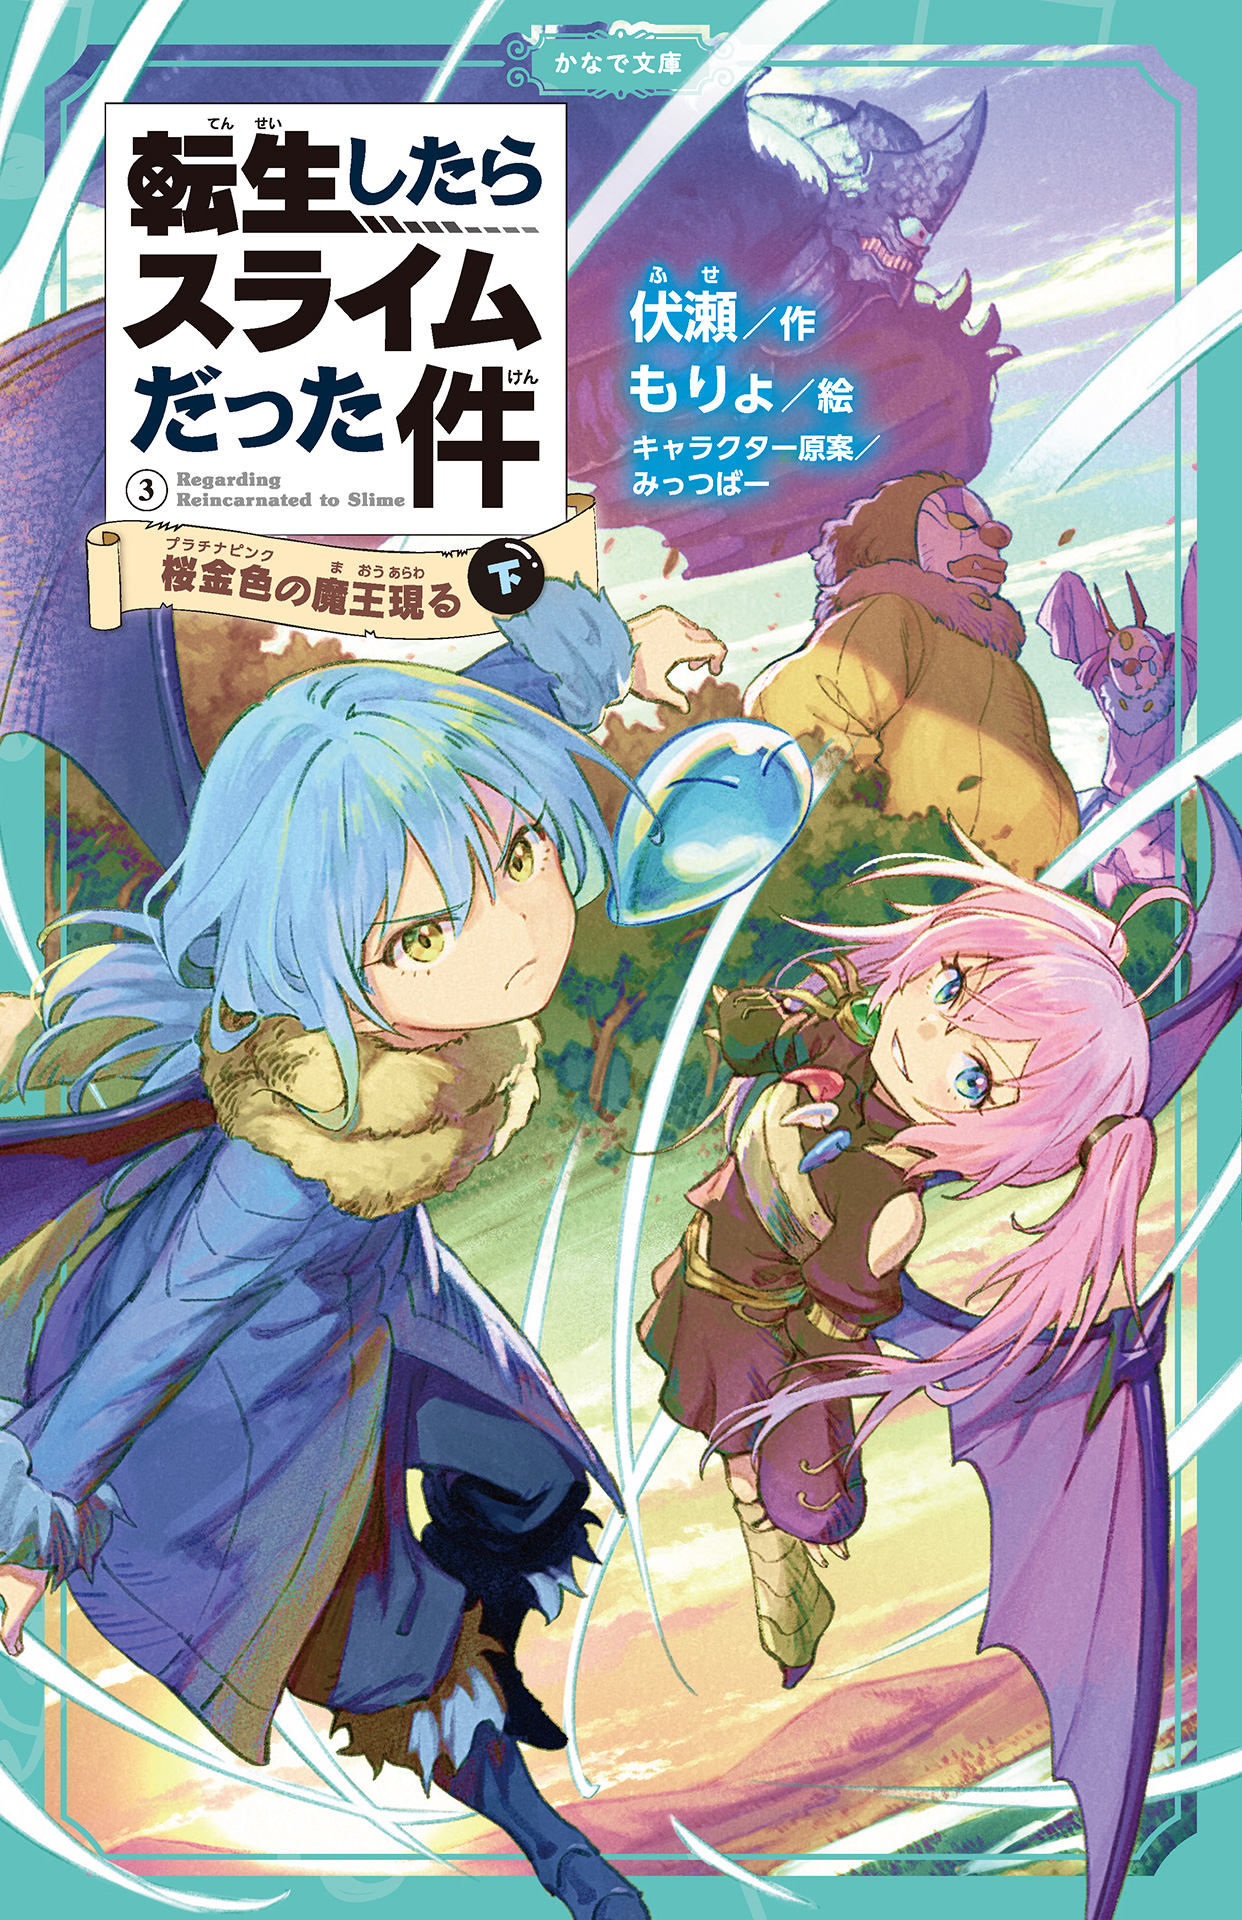 Manga Volume 17, Tensei Shitara Slime Datta Ken Wiki